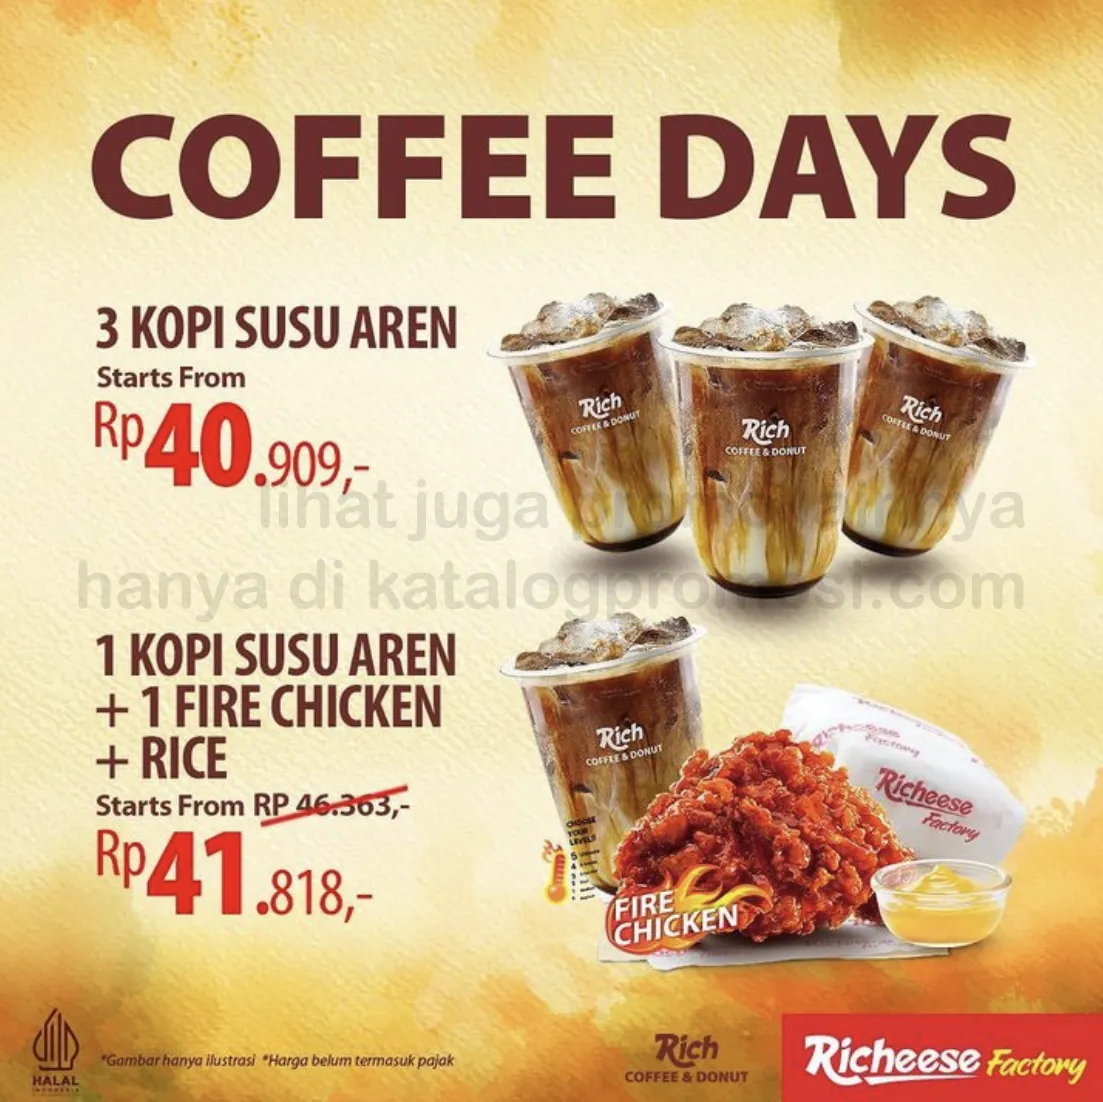 Rich Coffee & Donut Promo Coffee Day - Paket Kopi Susu Aren mulai Rp 40.909 